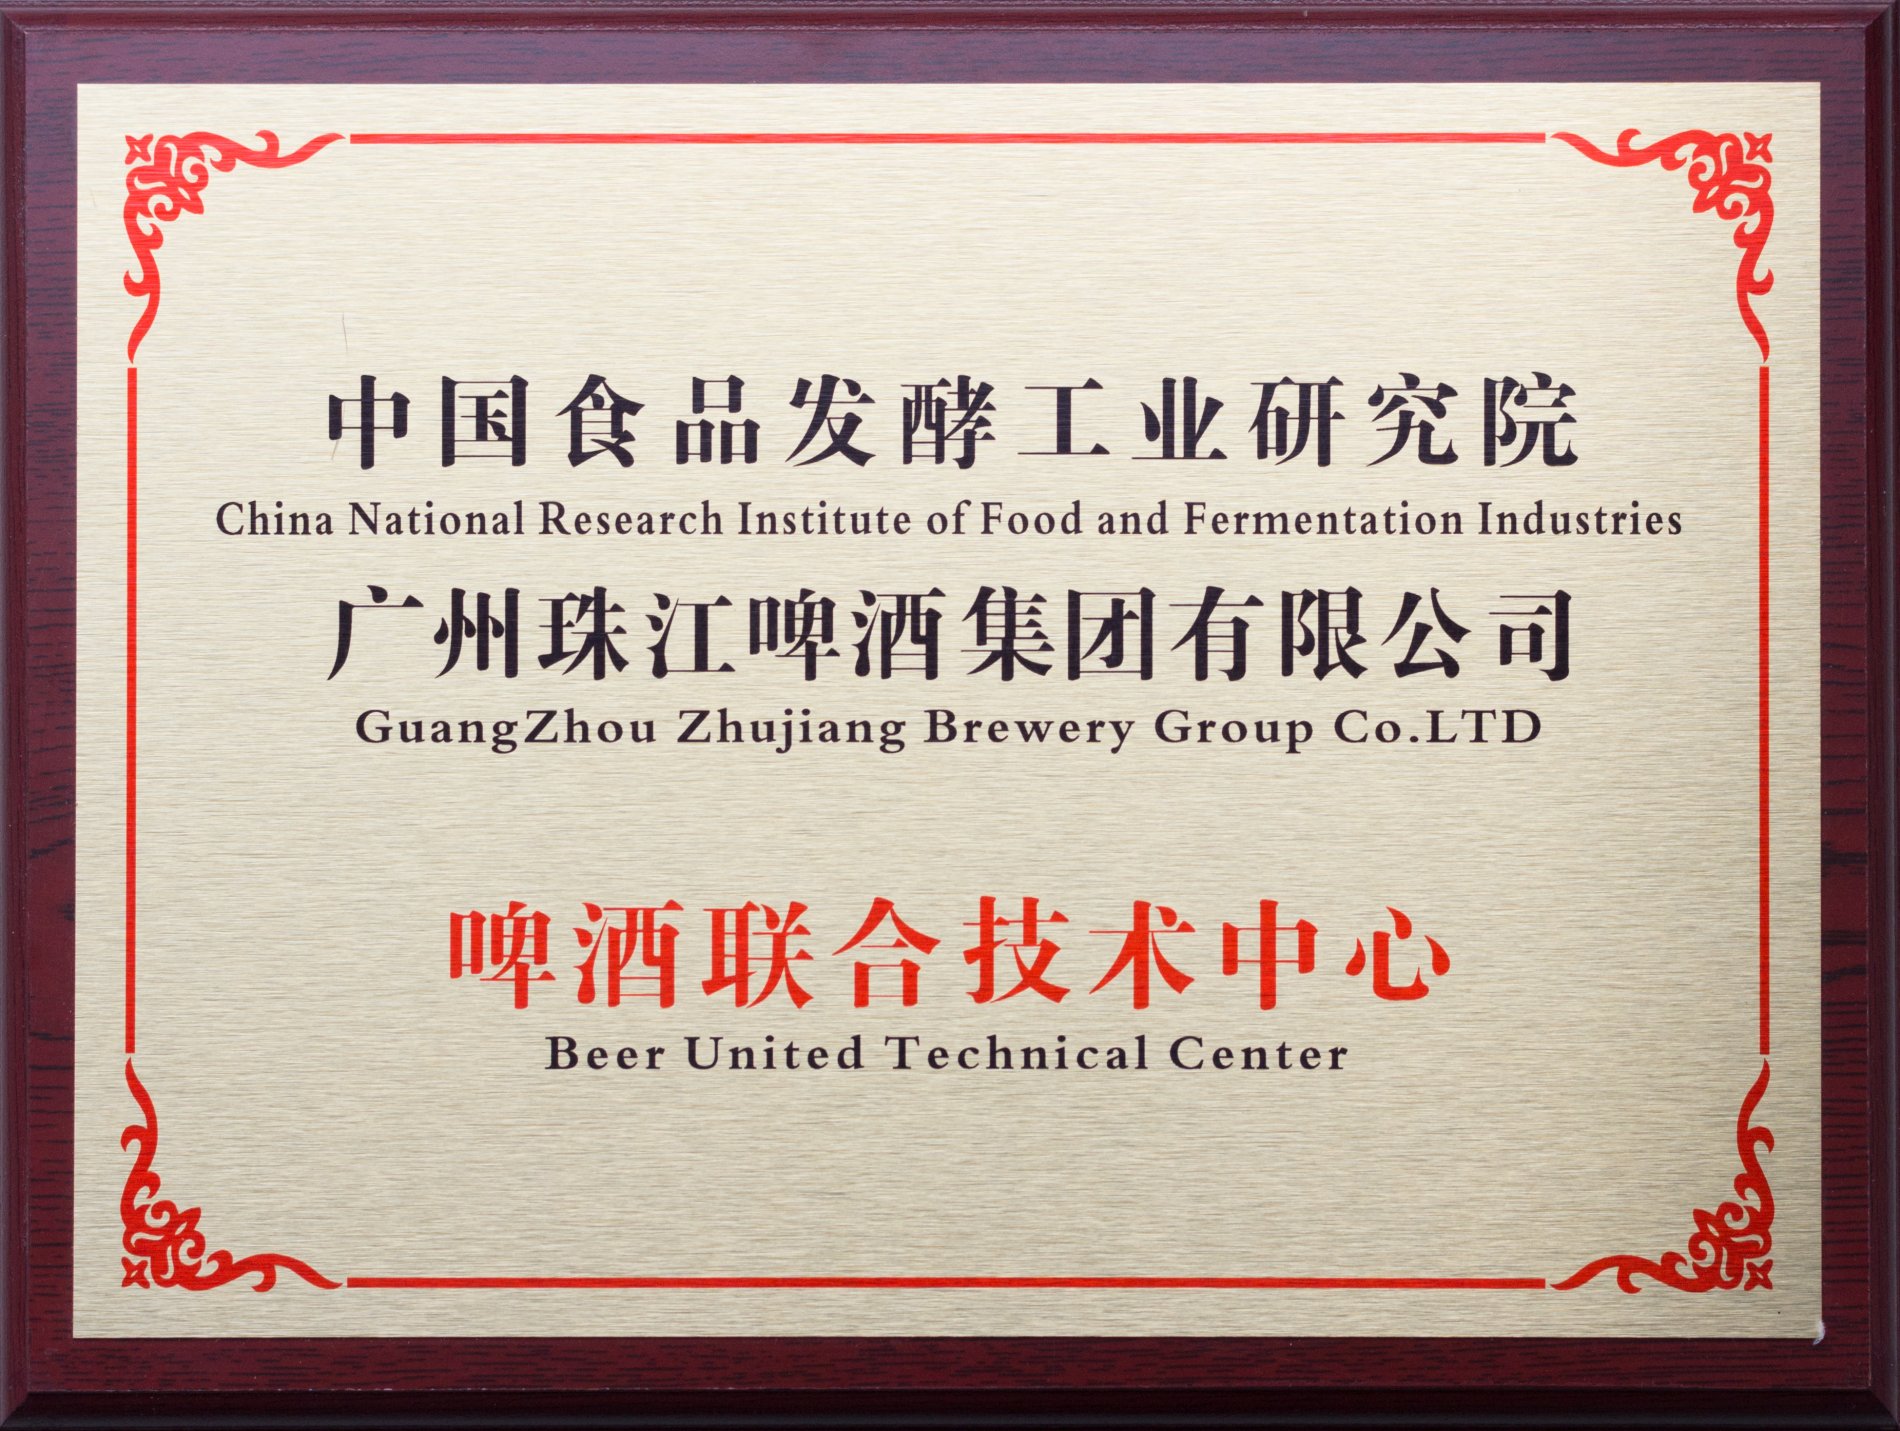 广州珠江啤酒联合技术中心